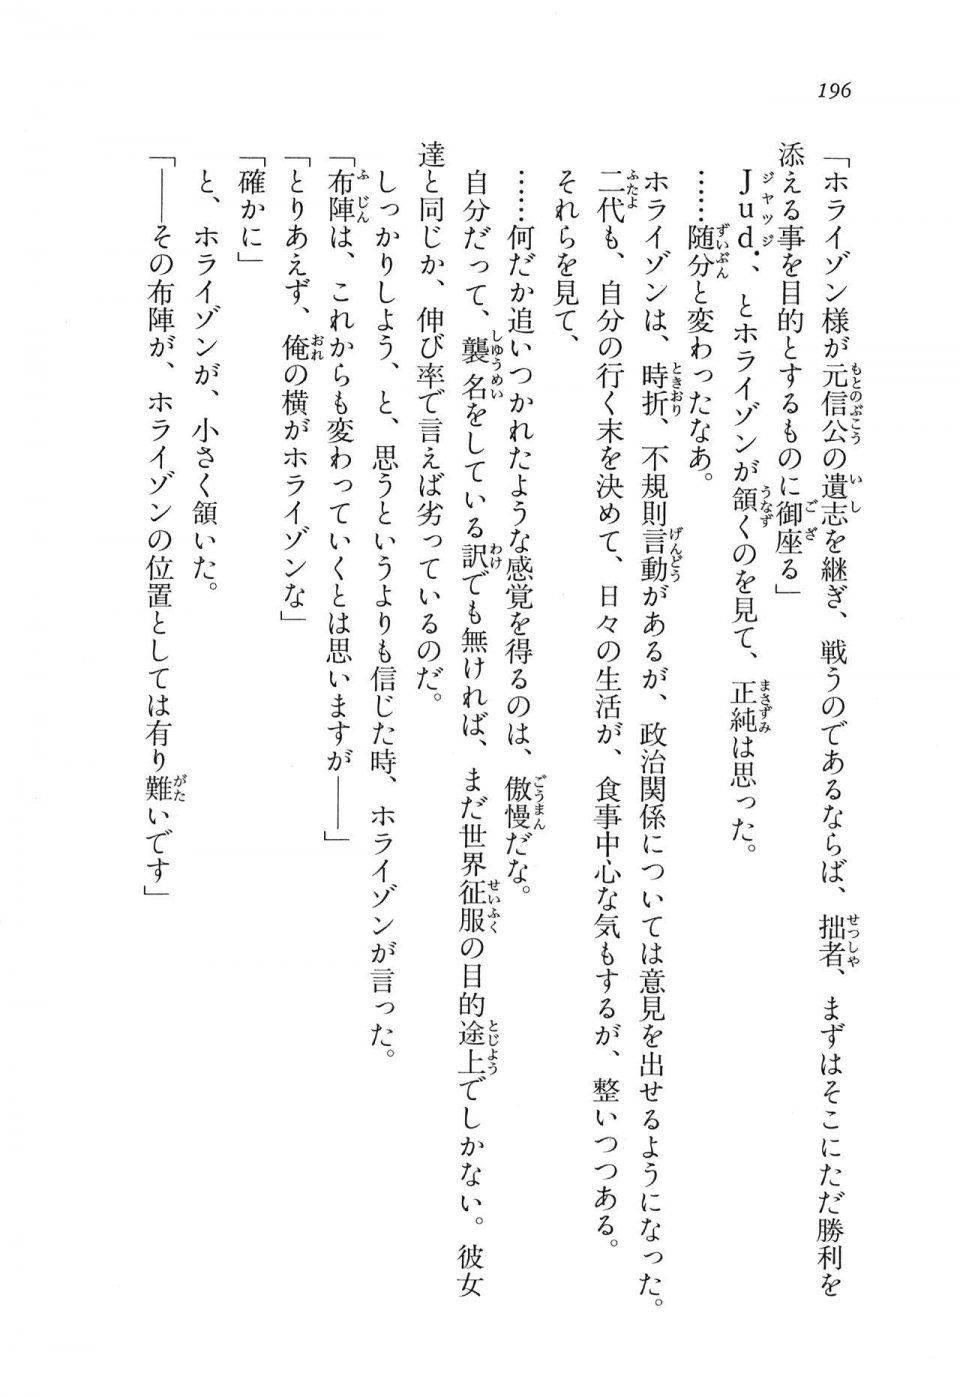 Kyoukai Senjou no Horizon LN Vol 11(5A) - Photo #196